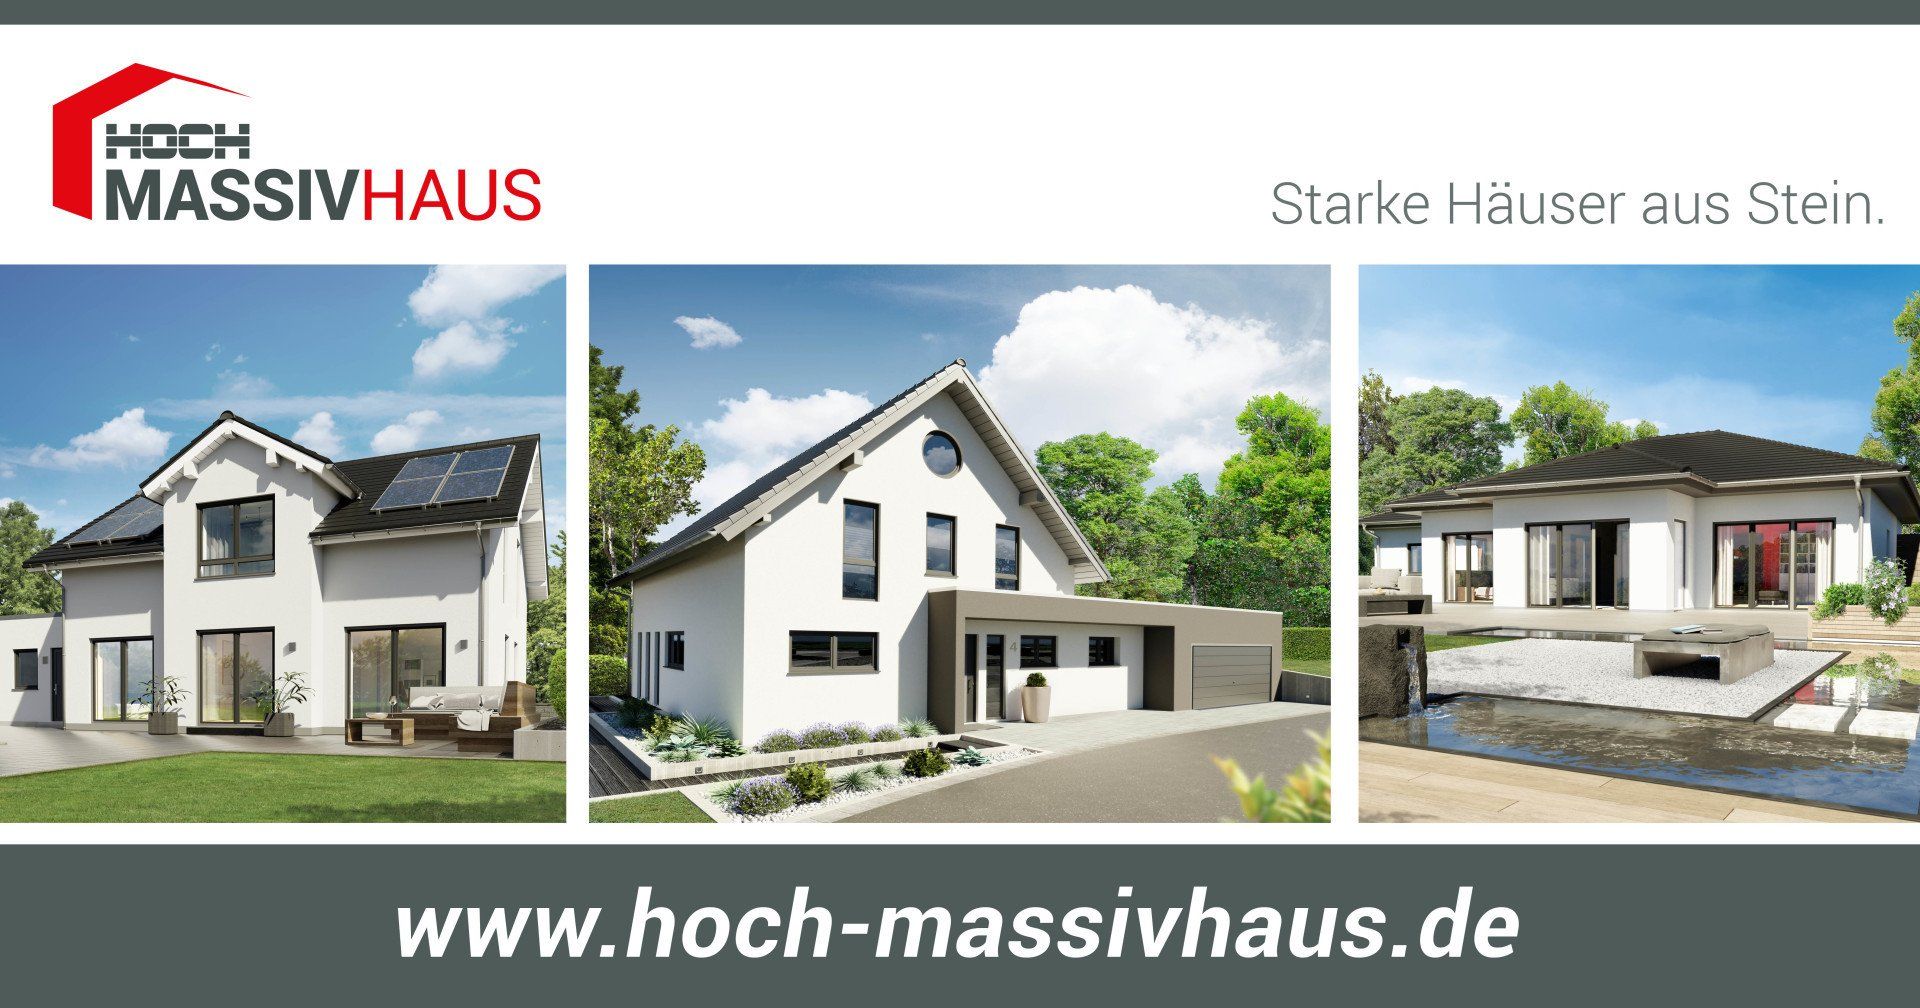 (c) Hoch-massivhaus.de